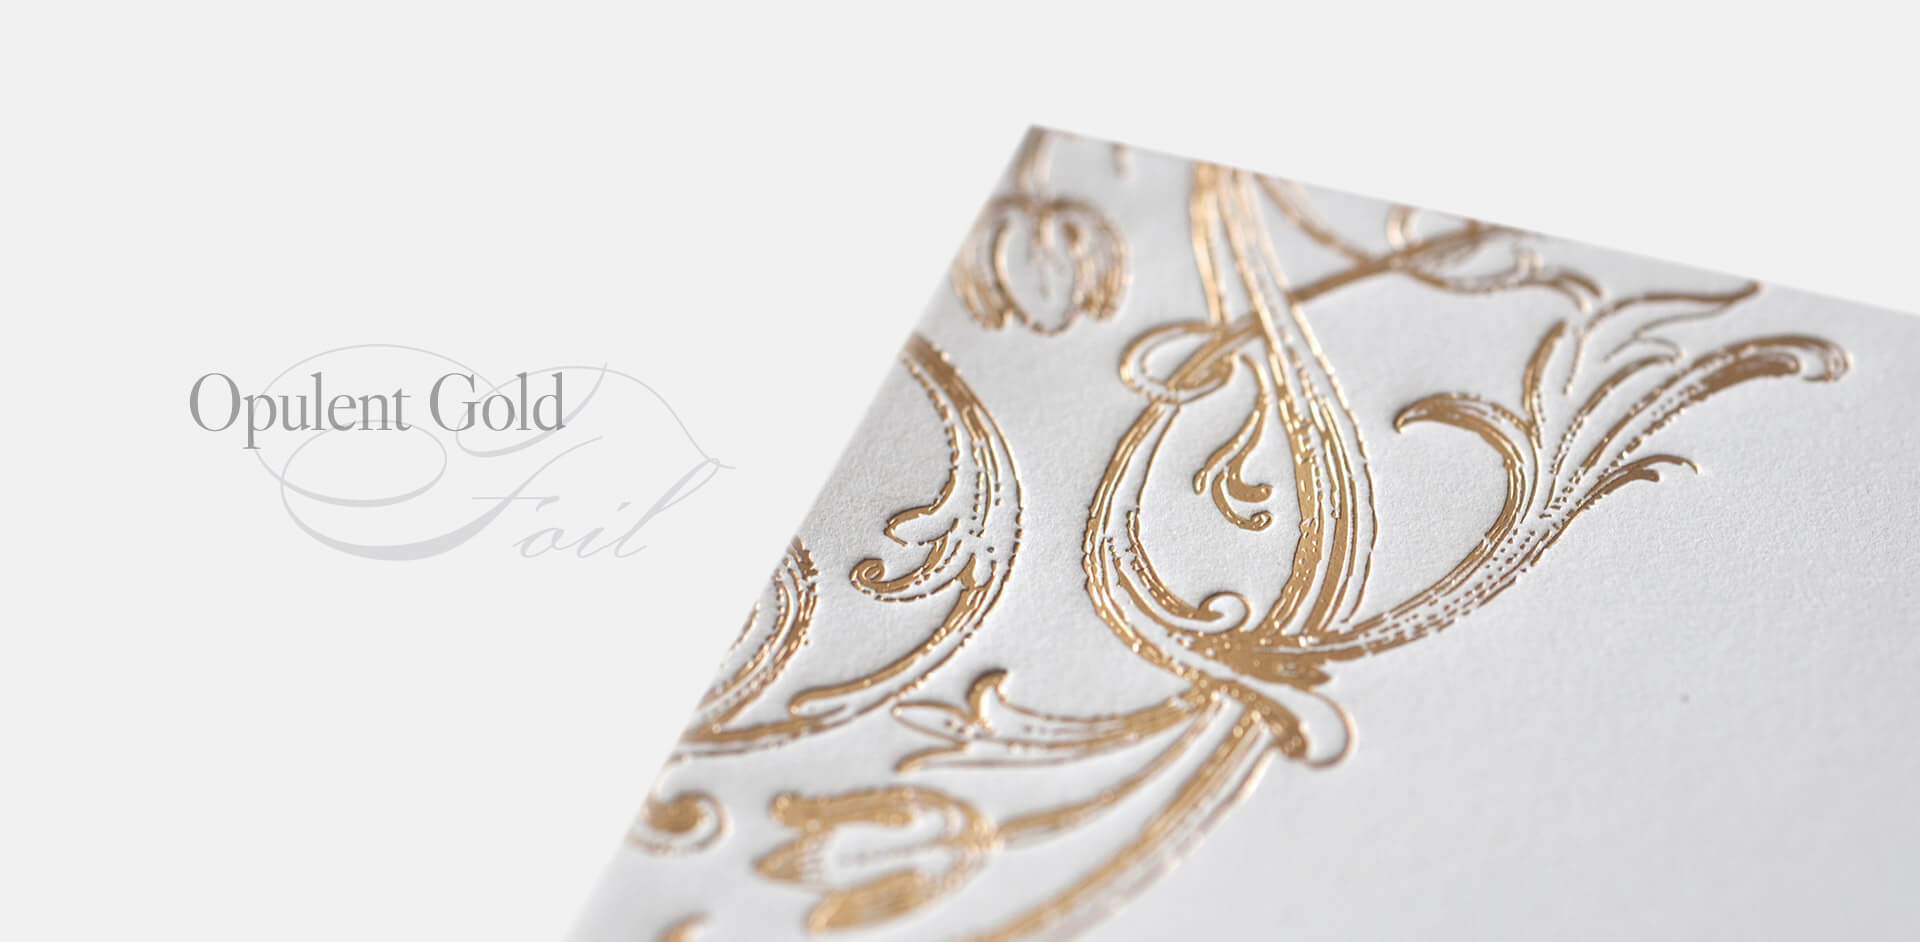 Ornate gold foil envelope